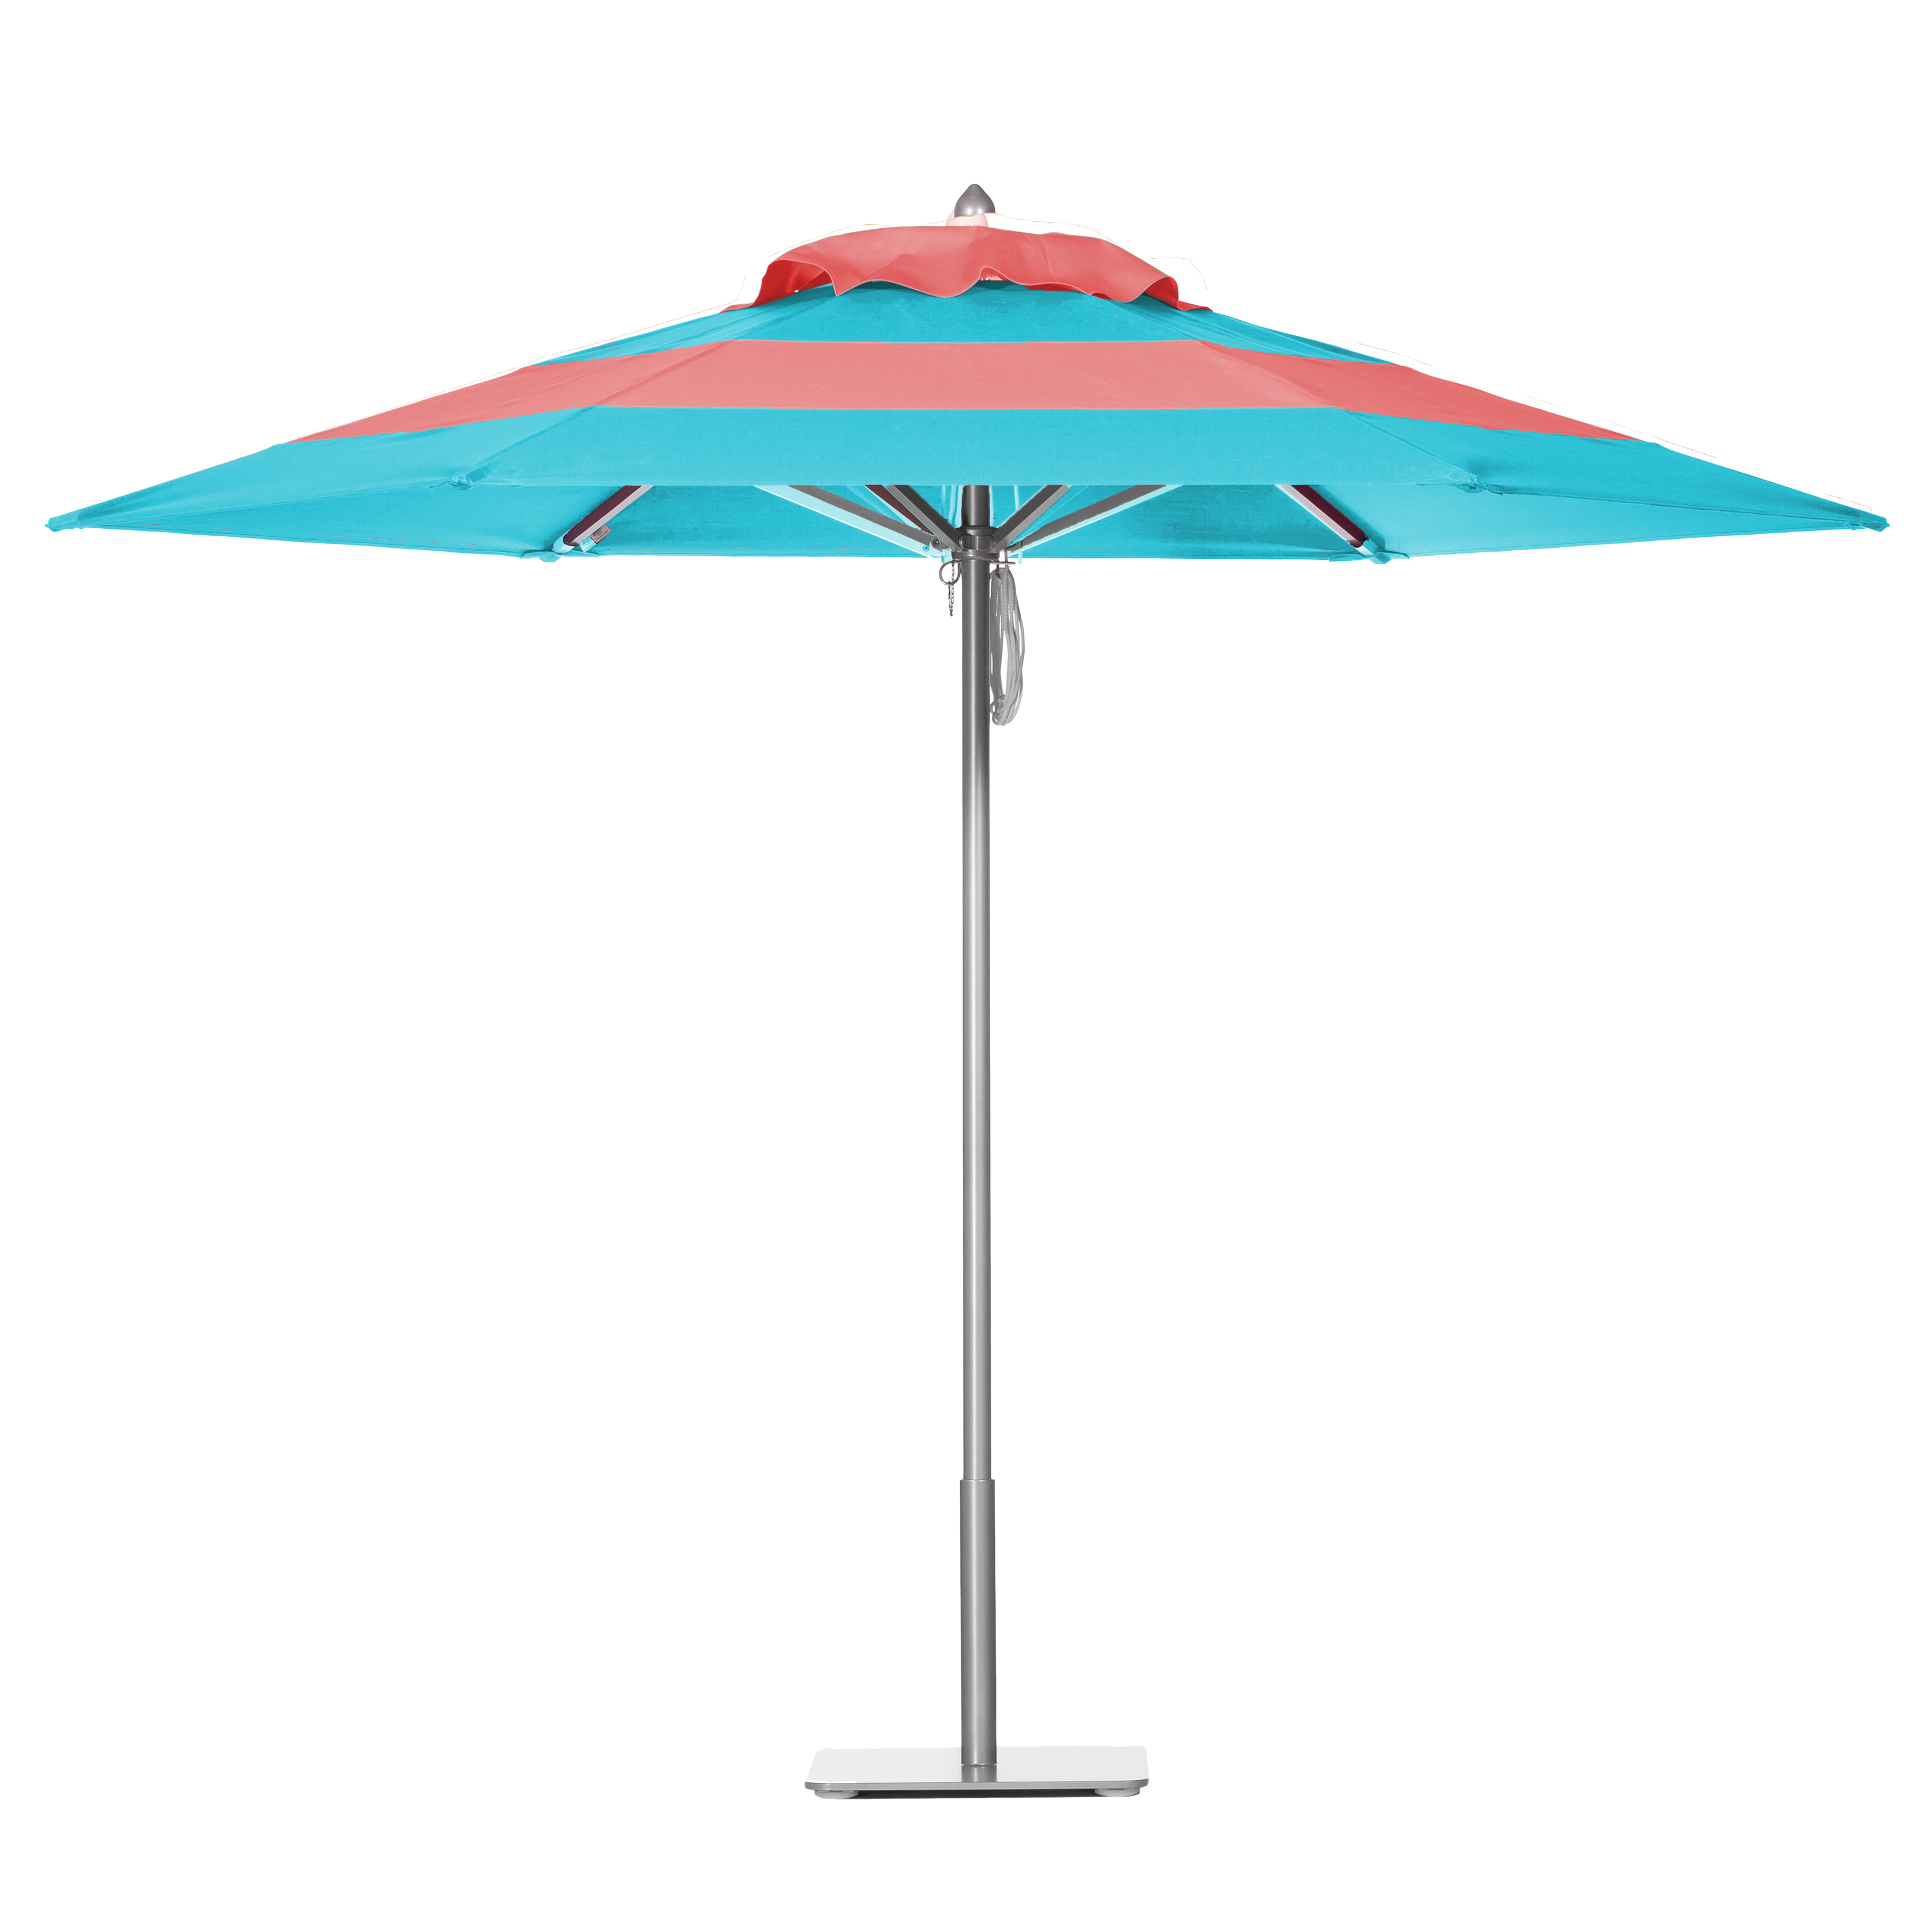 Aqua Sea & Watermelon Umbrella Image